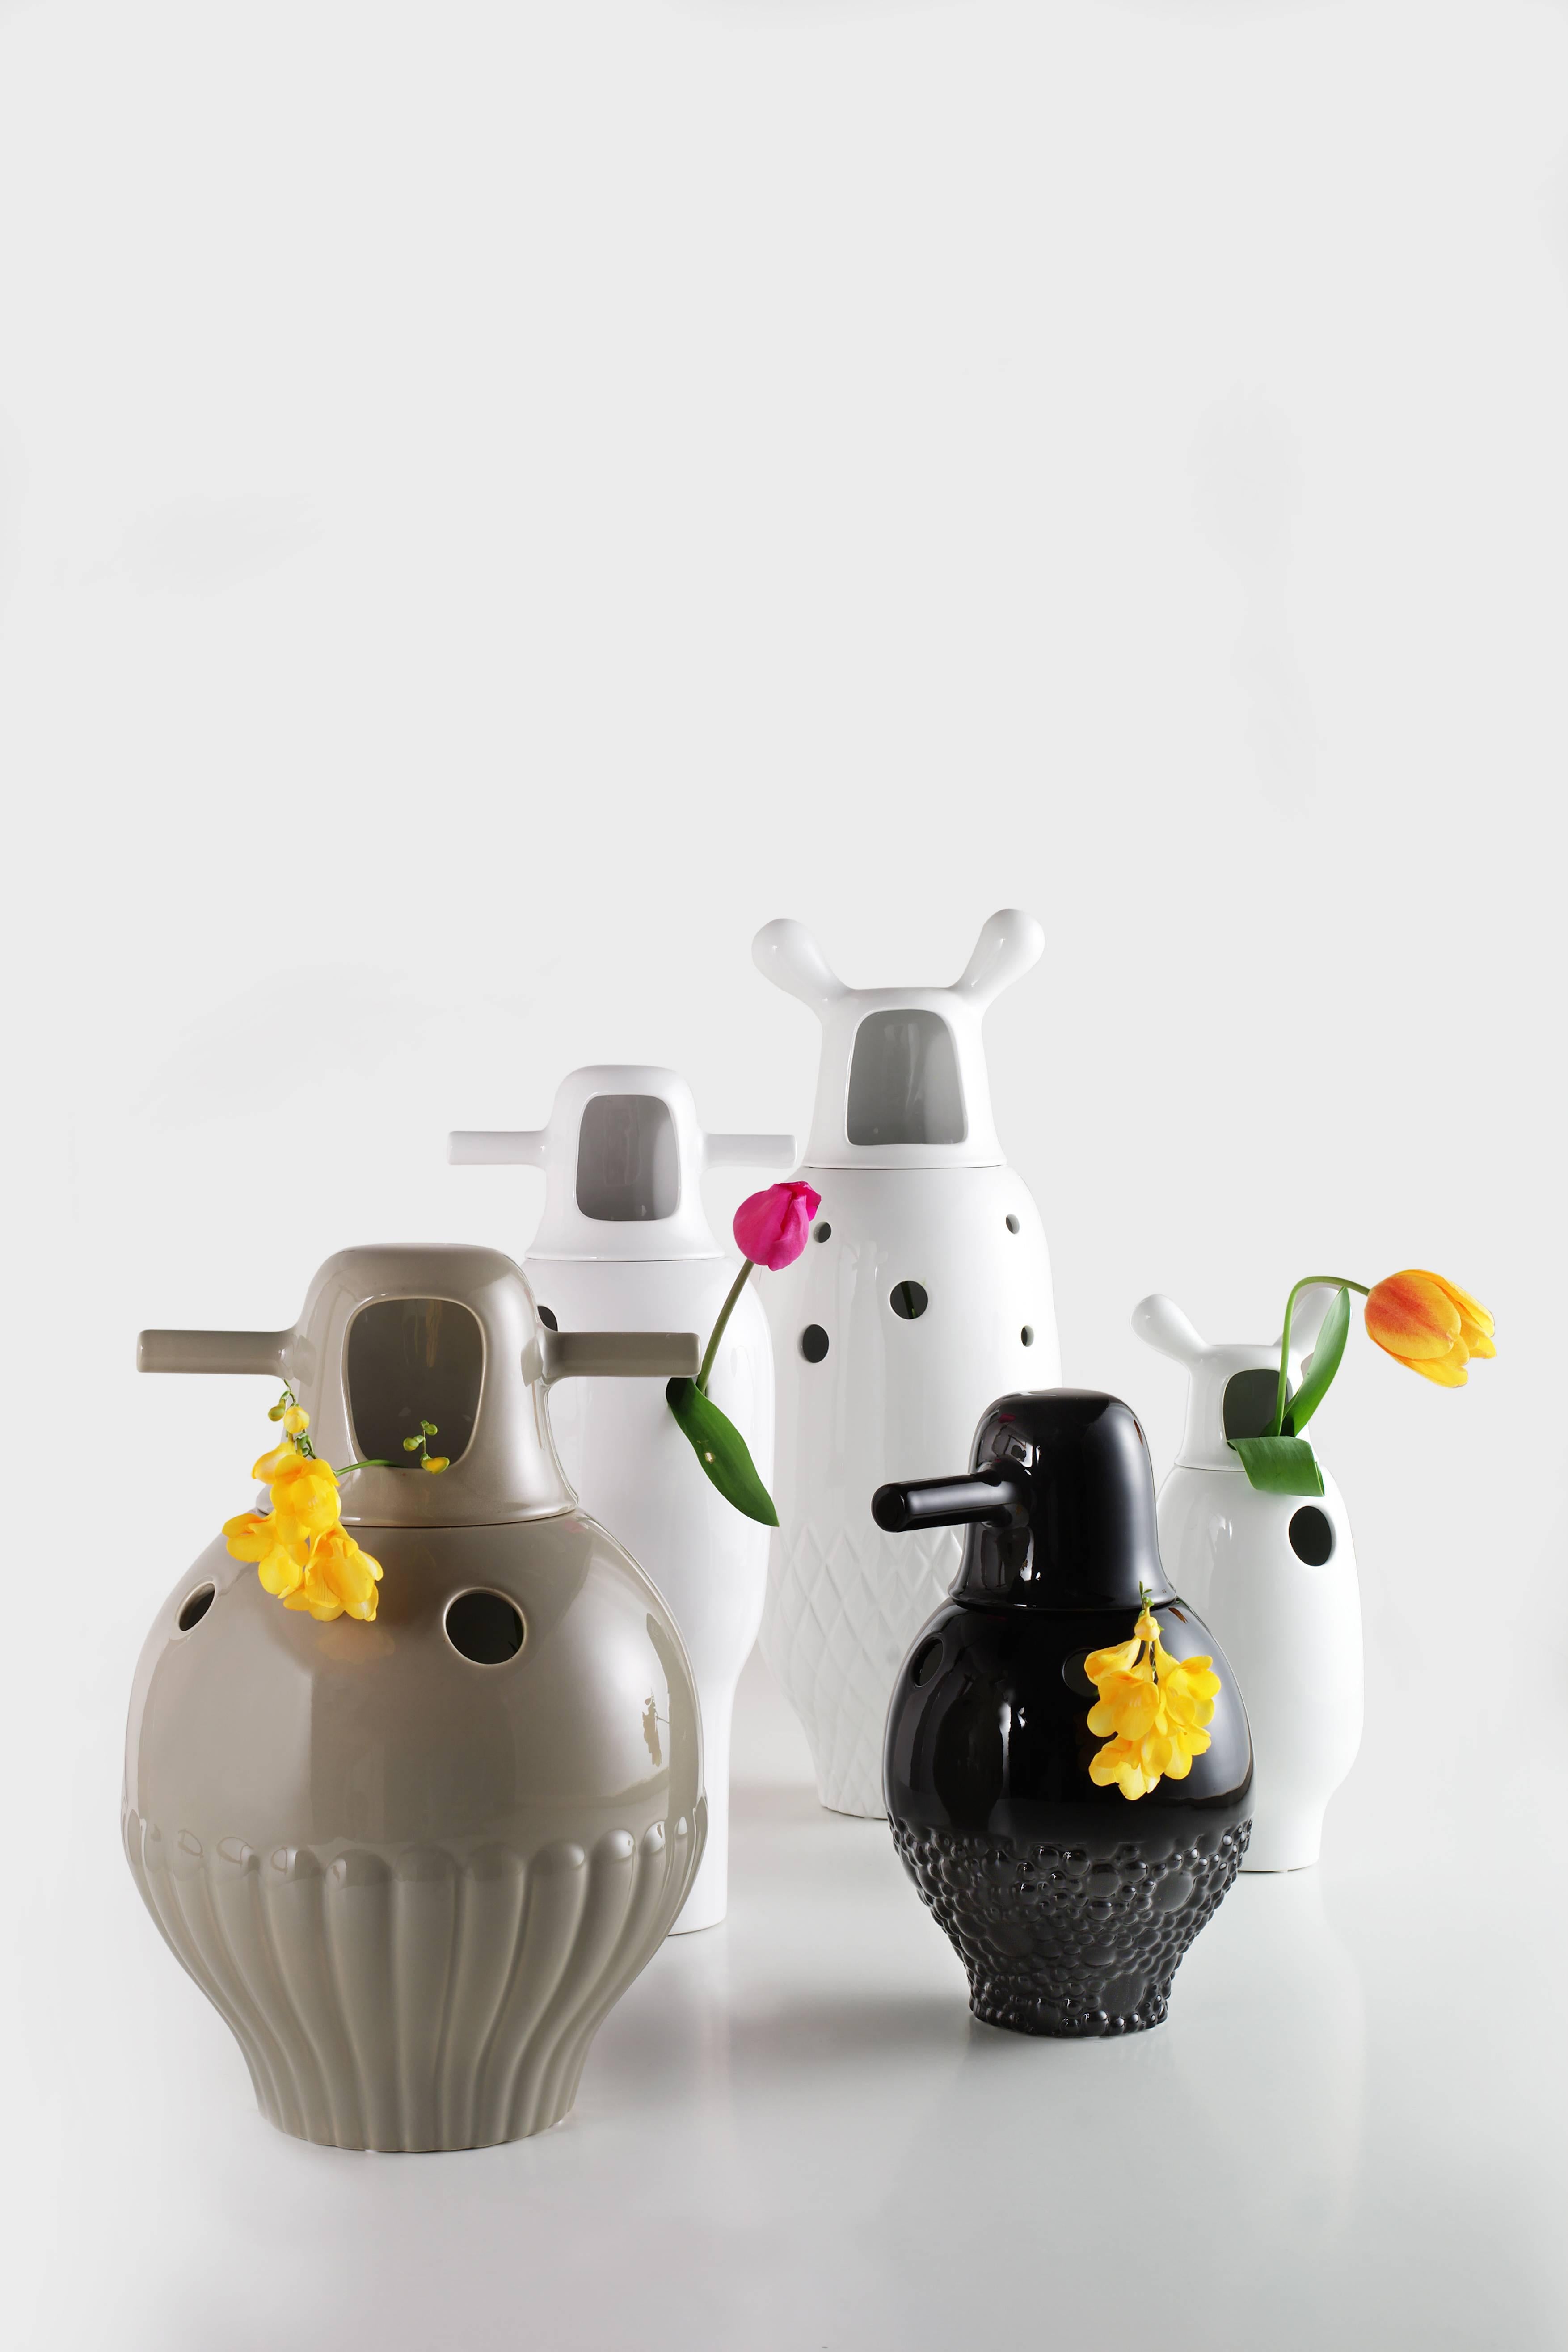 Les vases Showtime sont tout aussi actuels que lorsque nous les avons lancés il y a plus de 10 ans. Il s'agit de petites sculptures décoratives qui reproduisent intégralement l'univers de Hayon.

Composé de deux pièces en céramique émaillée. Vase